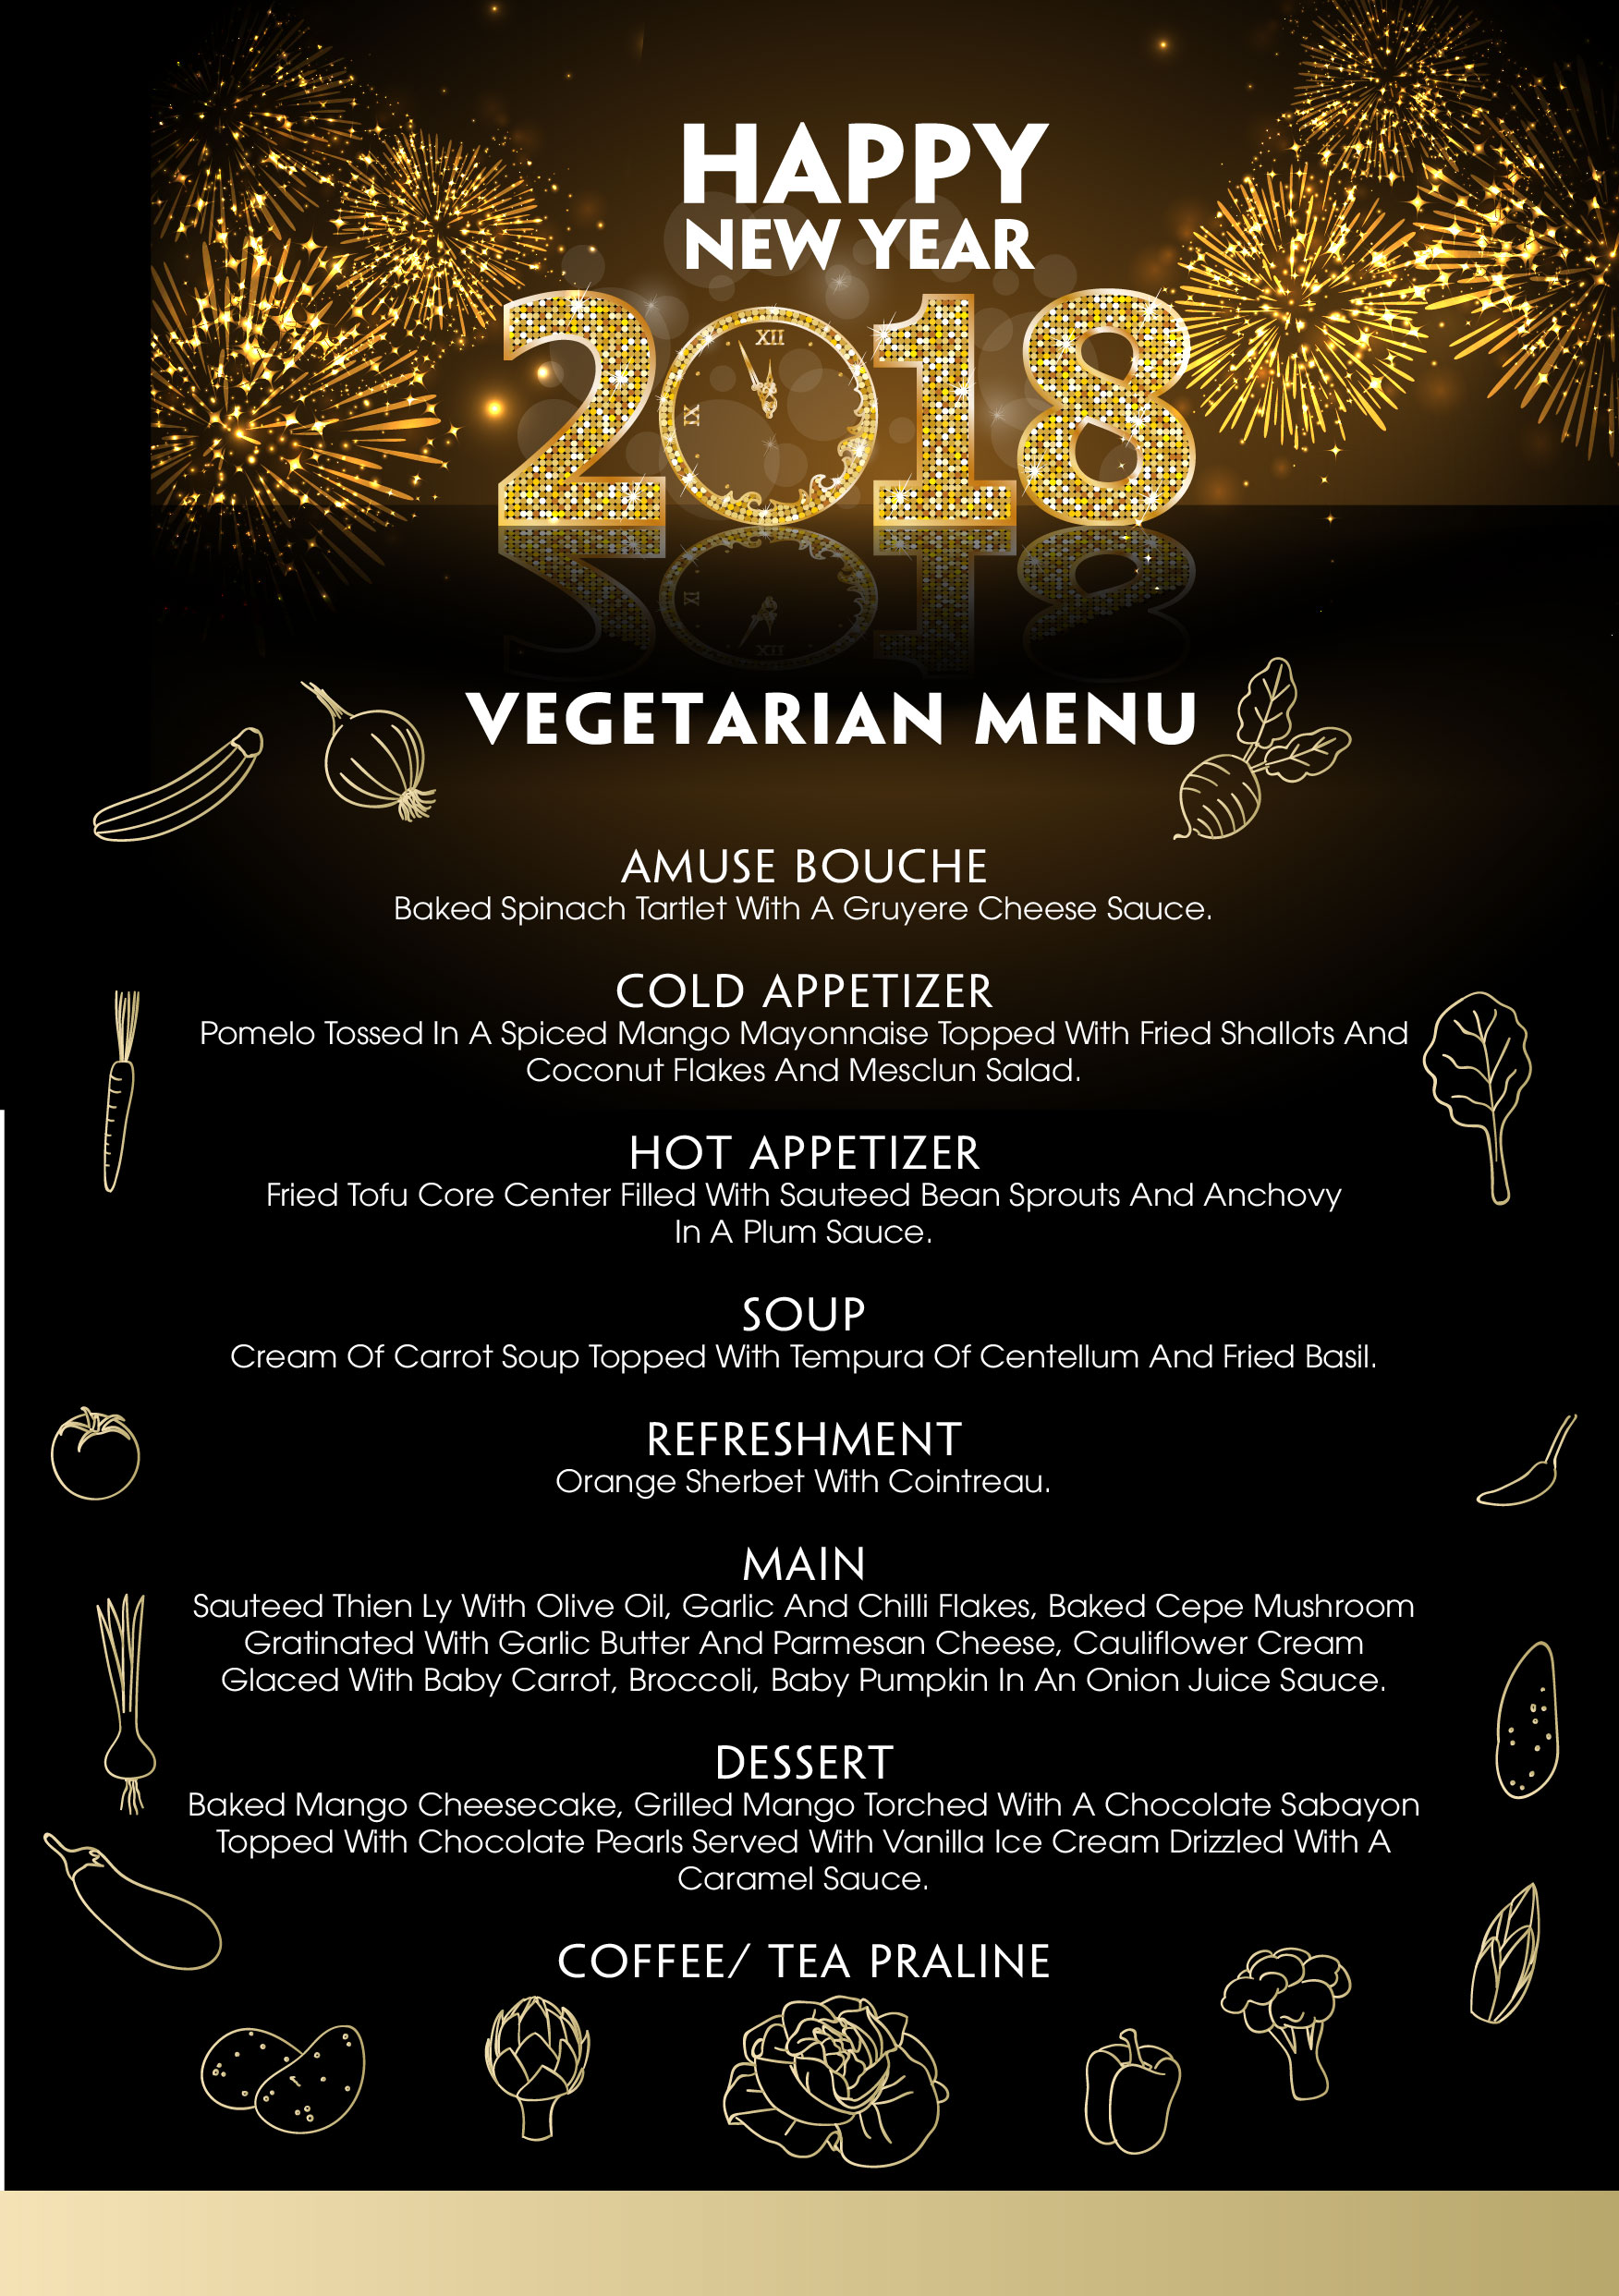 Christmas 2017 vegetarian menu